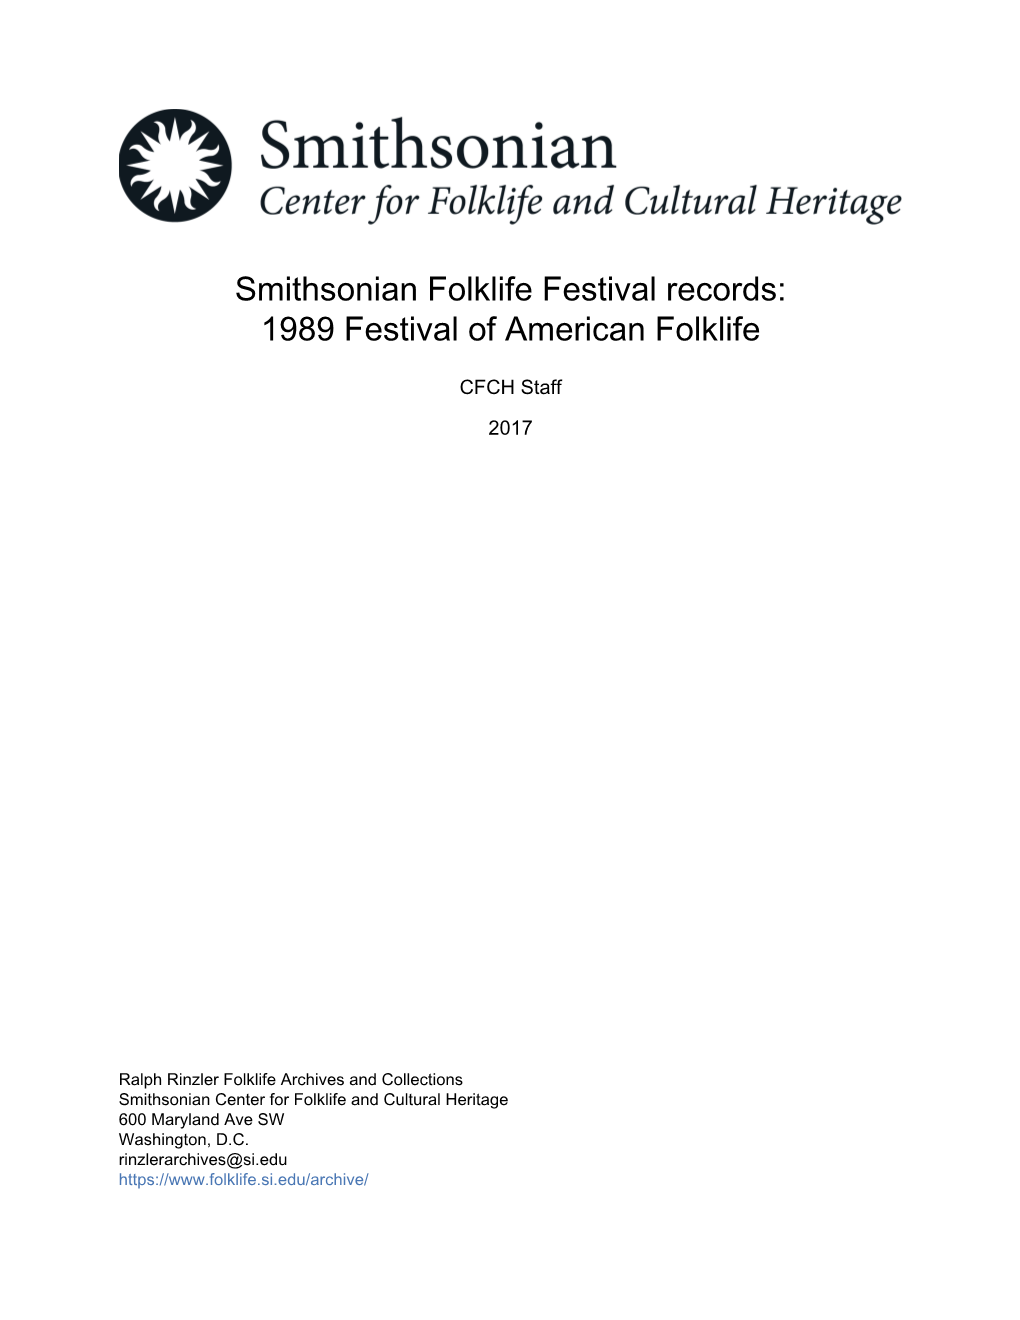 1989 Festival of American Folklife